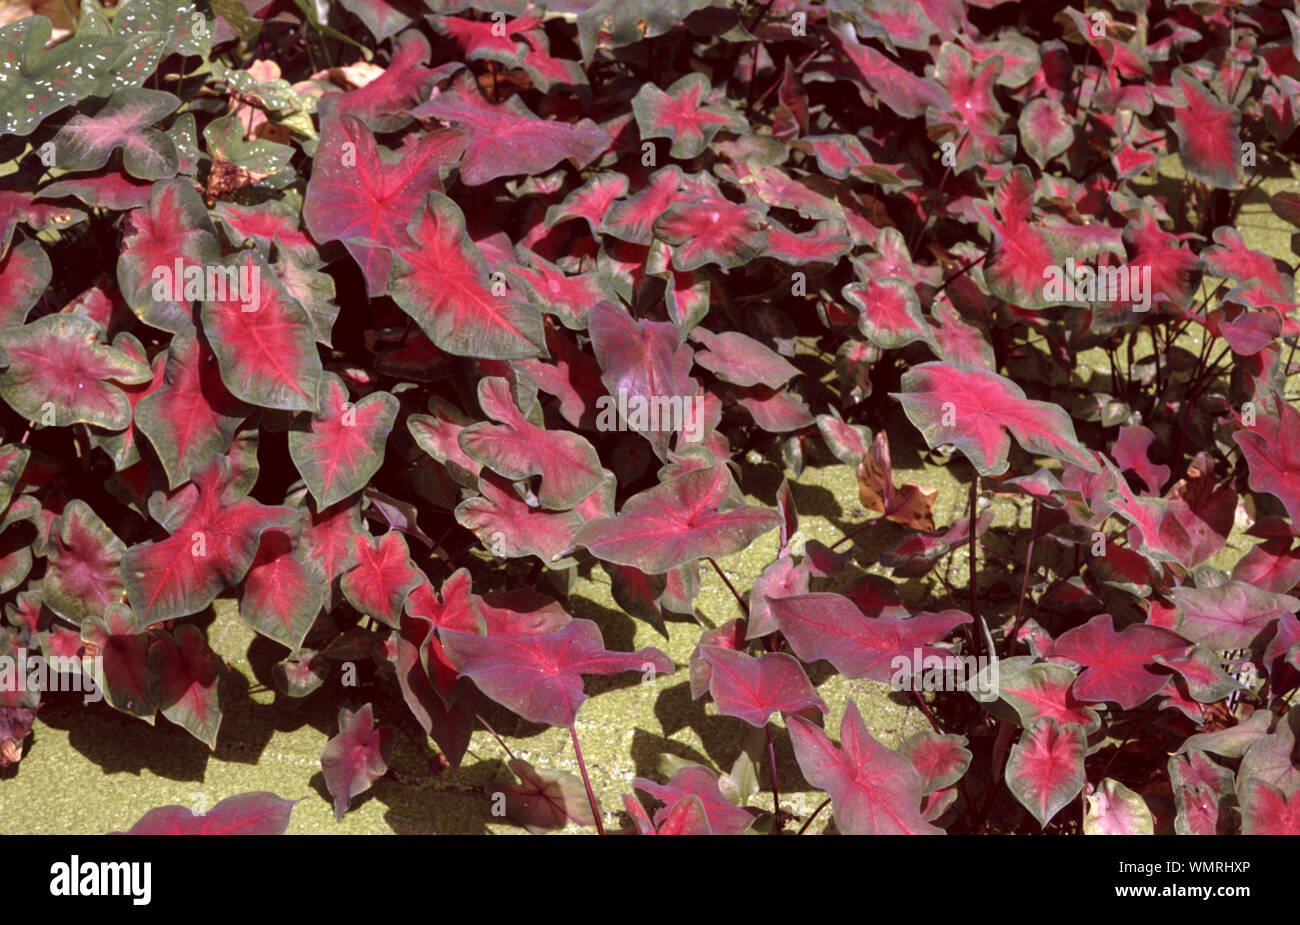 Fancy-leaf caladium, Caladium bicolor Stock Photo